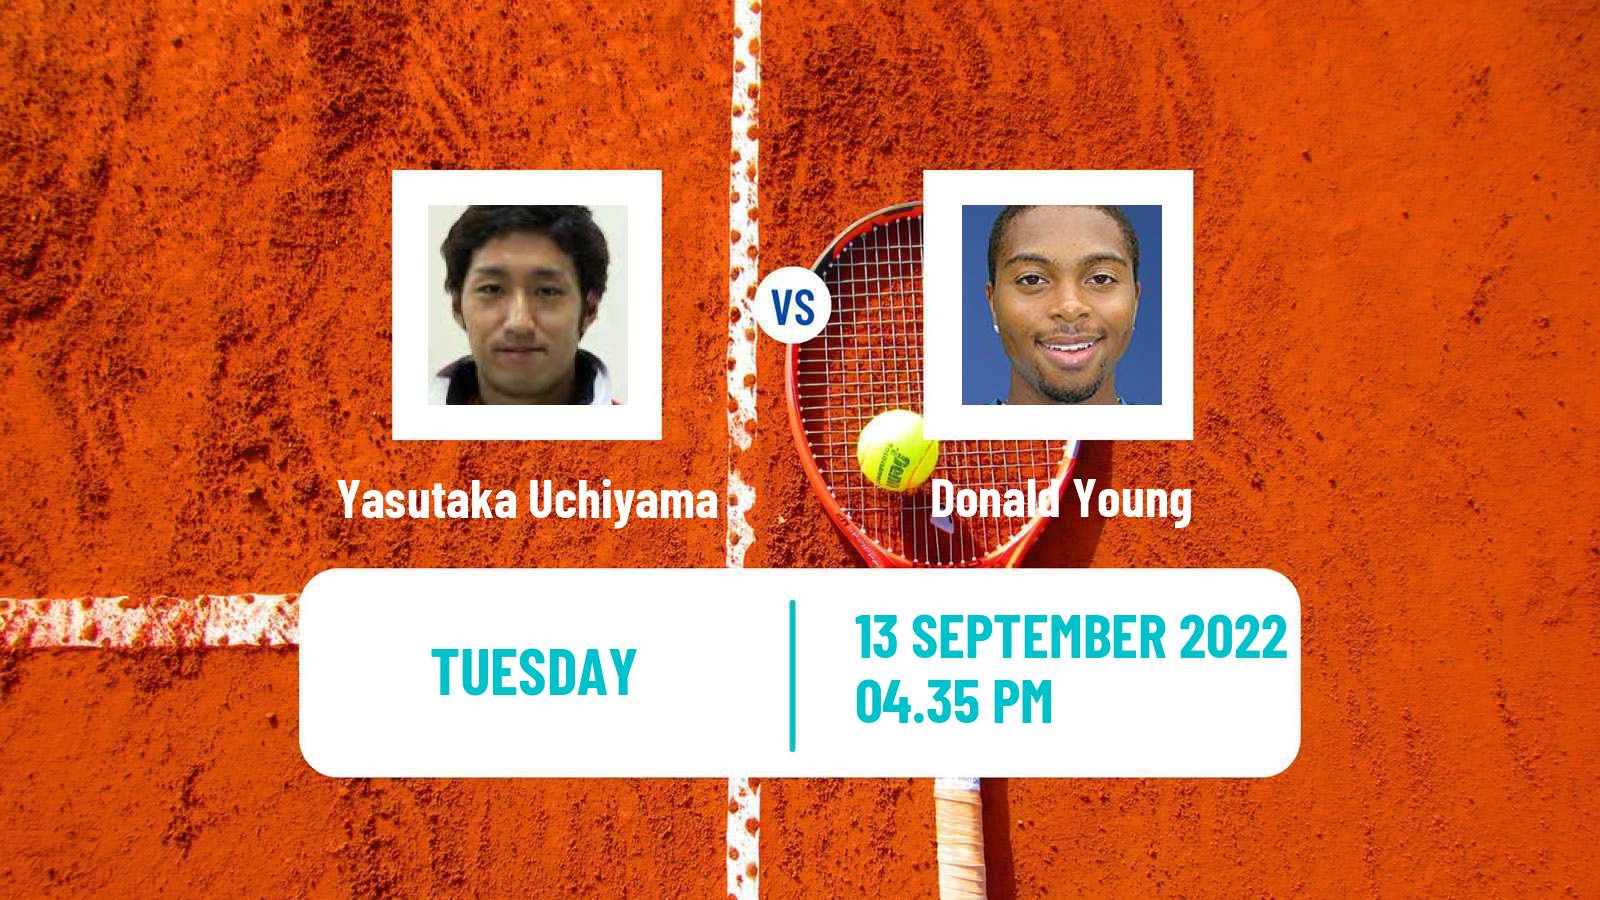 Tennis ATP Challenger Yasutaka Uchiyama - Donald Young